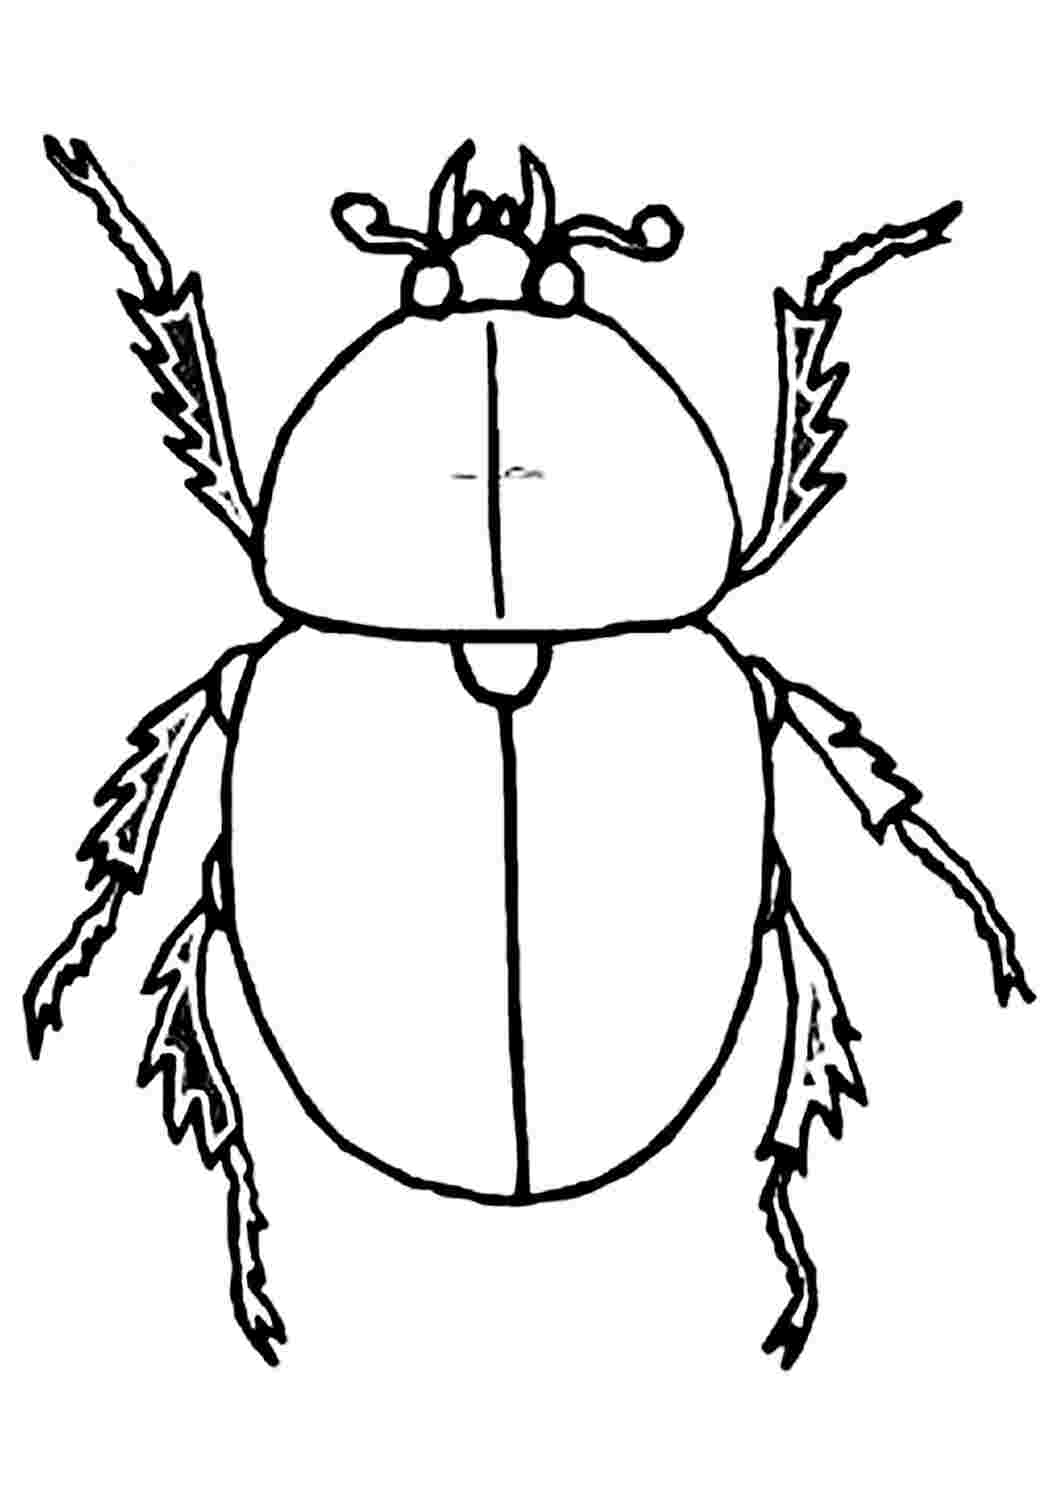 Изображения по запросу Рабочий лист раскрашивания насекомых